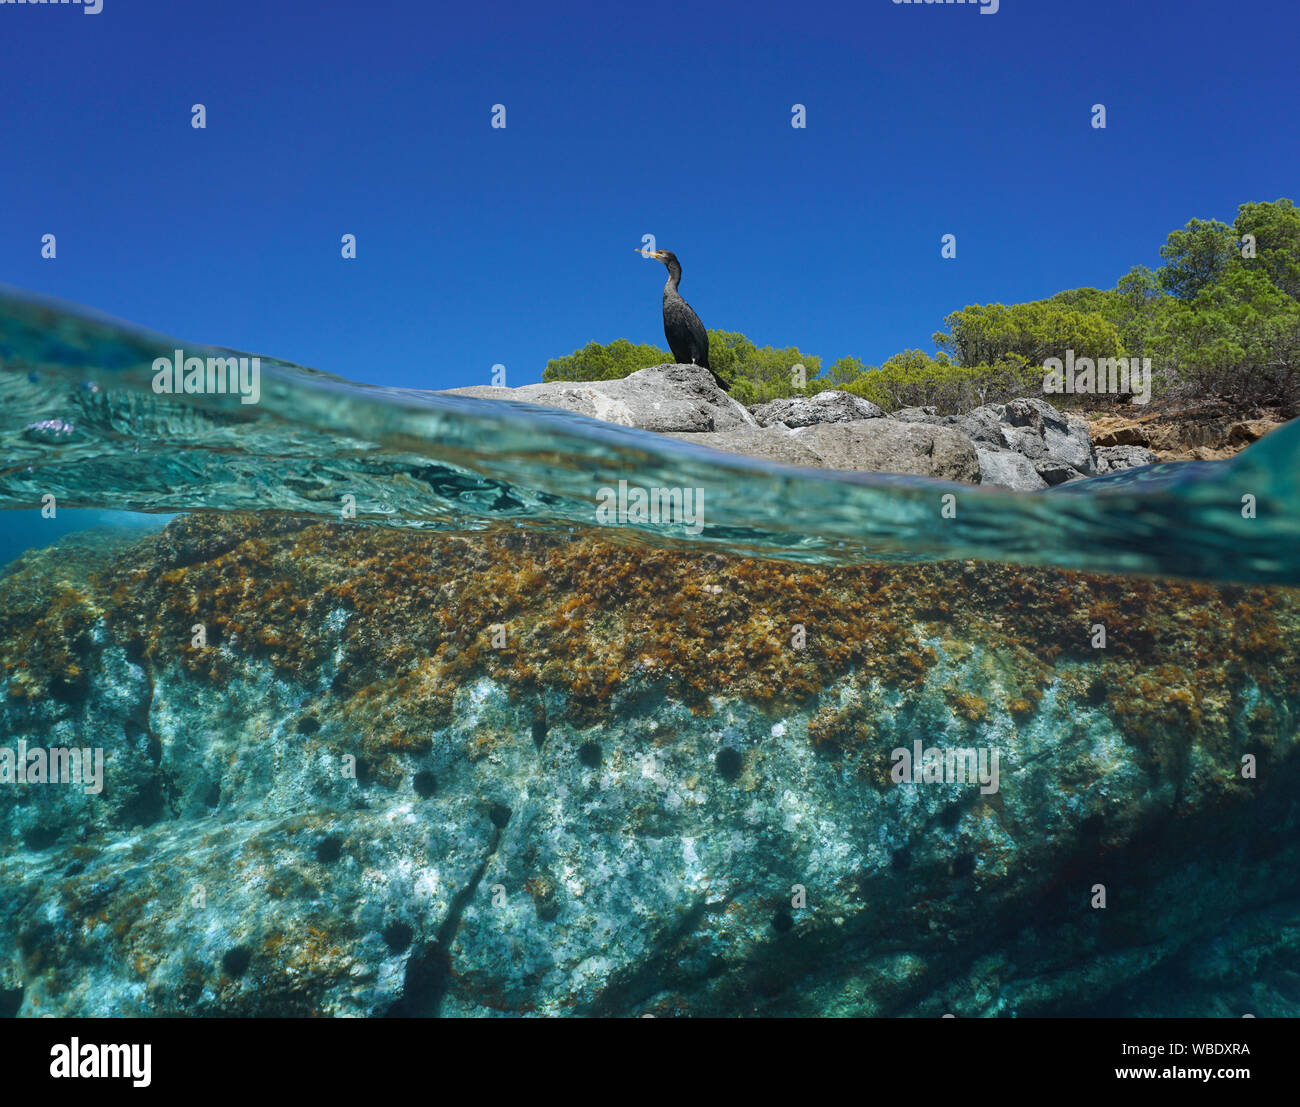 Un cormoran oiseau debout sur la côte rocheuse, fractionnée sur et sous la surface de l'eau, Méditerranée, Espagne, îles Baléares, Ibiza Banque D'Images